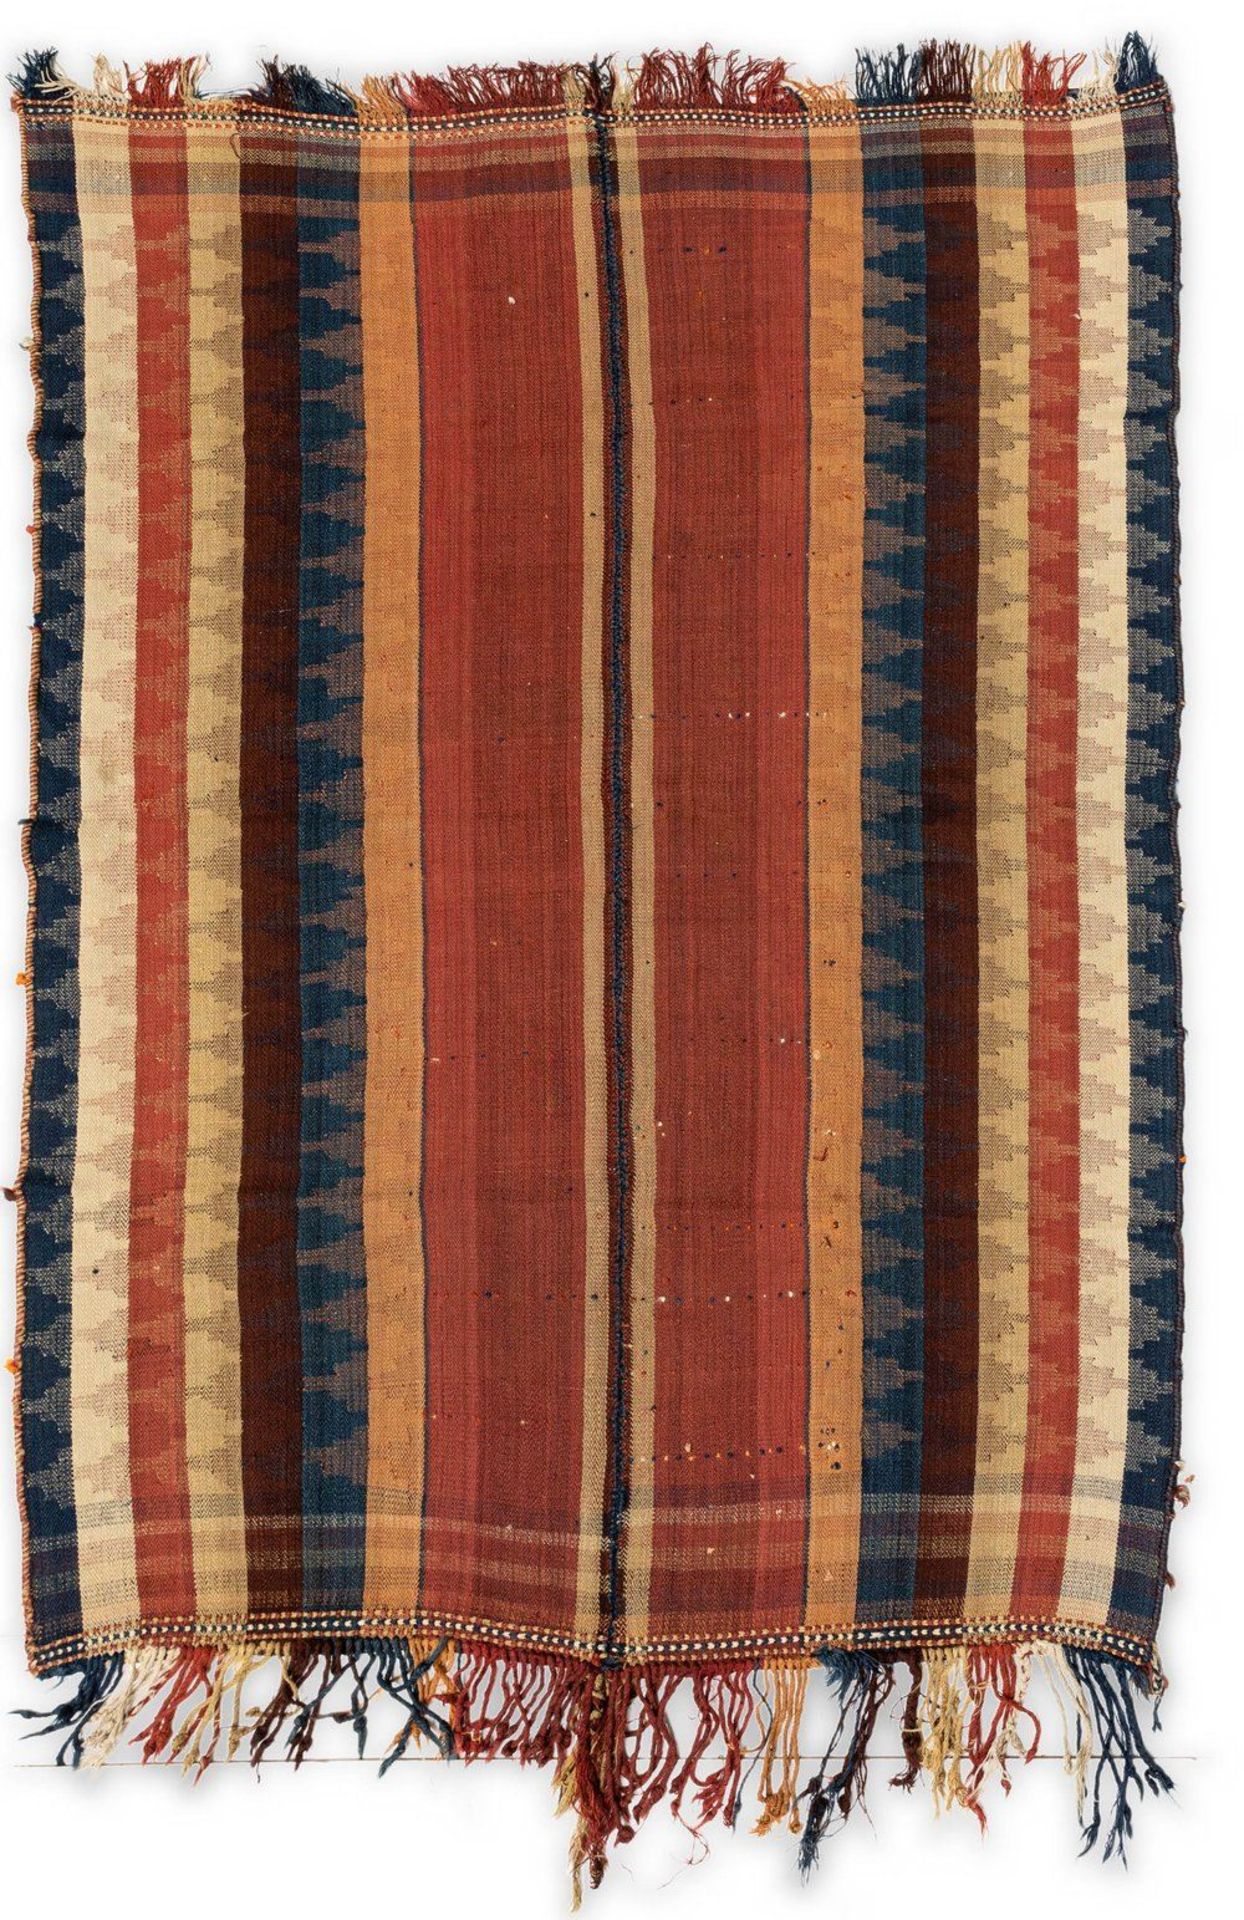 Jajim, Luri Moj.Gr. ca. 228/158 cm. Wolle, aus zwei Bahnen zusammengenäht. Bunte alterni